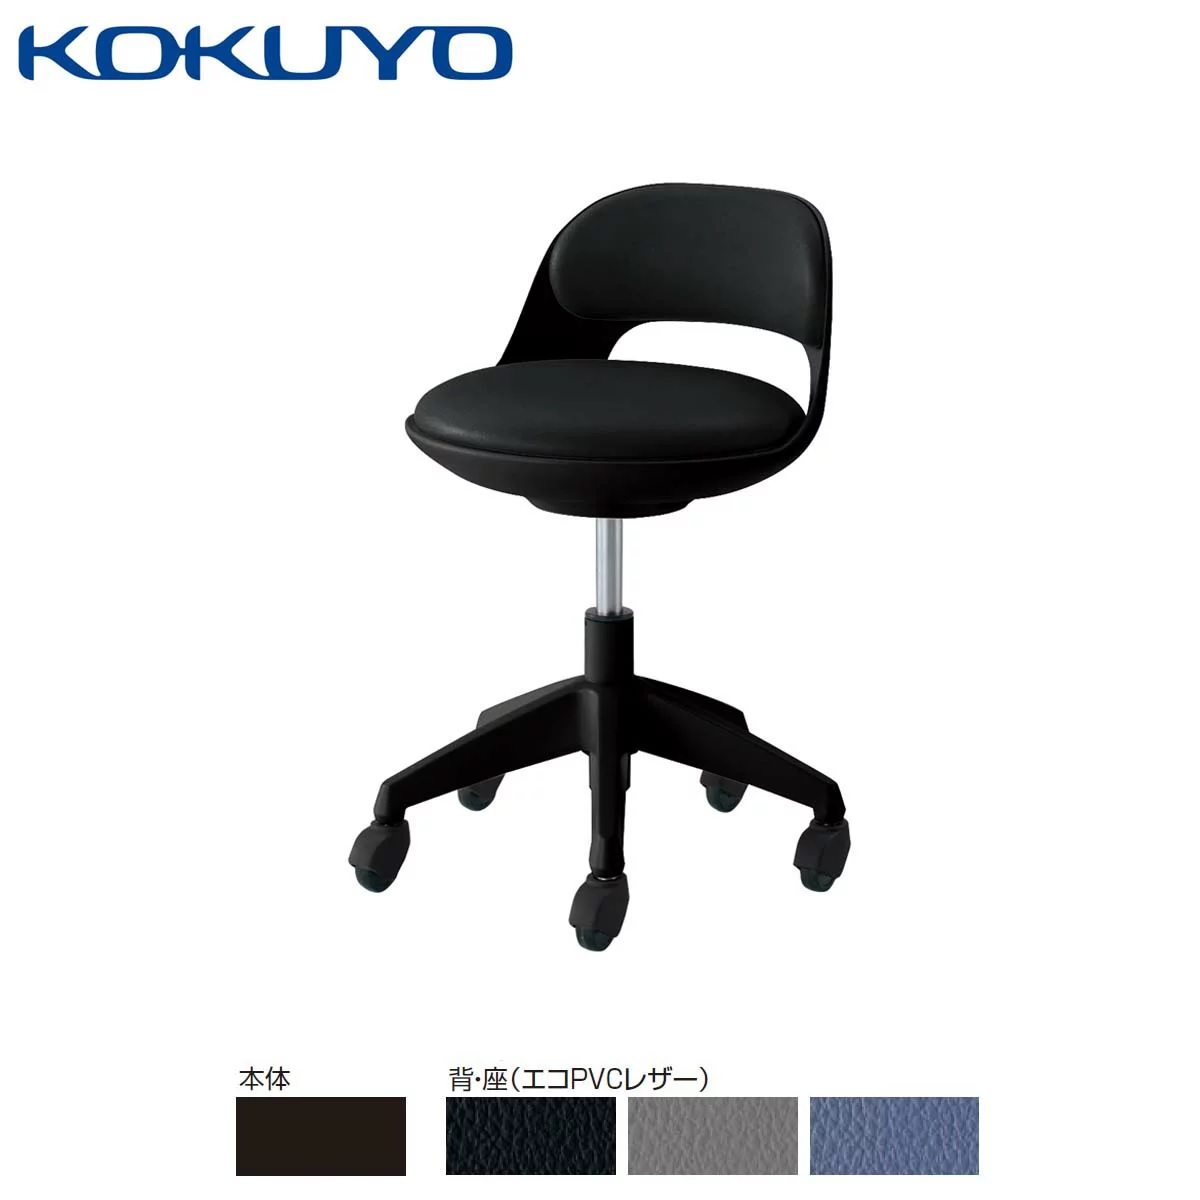 【コクヨ】デスクチェア オフィスチェア 椅子cocotte ココットCR-G542E6 ロータイプ サポートシェルタイプ ブラックシェル PVCレザー【メーカー直送配送】のサムネイル